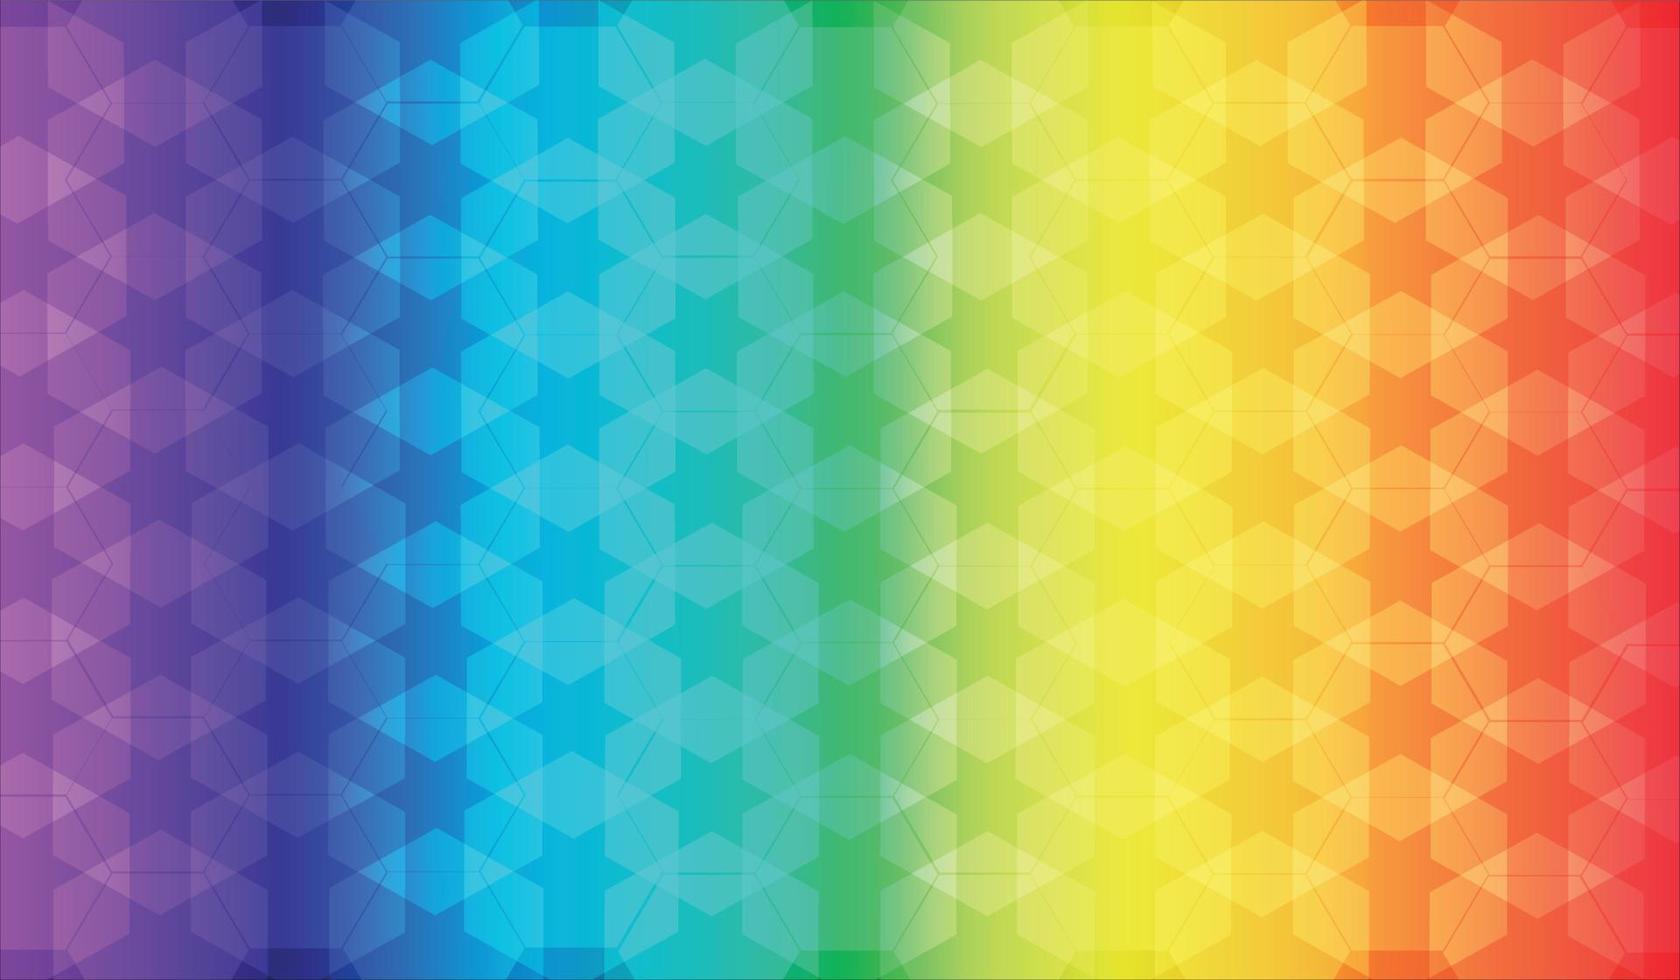 abstracte patroonachtergrond in regenboogachtergrondtoon, kleurrijke patroon naadloze achtergrond vector